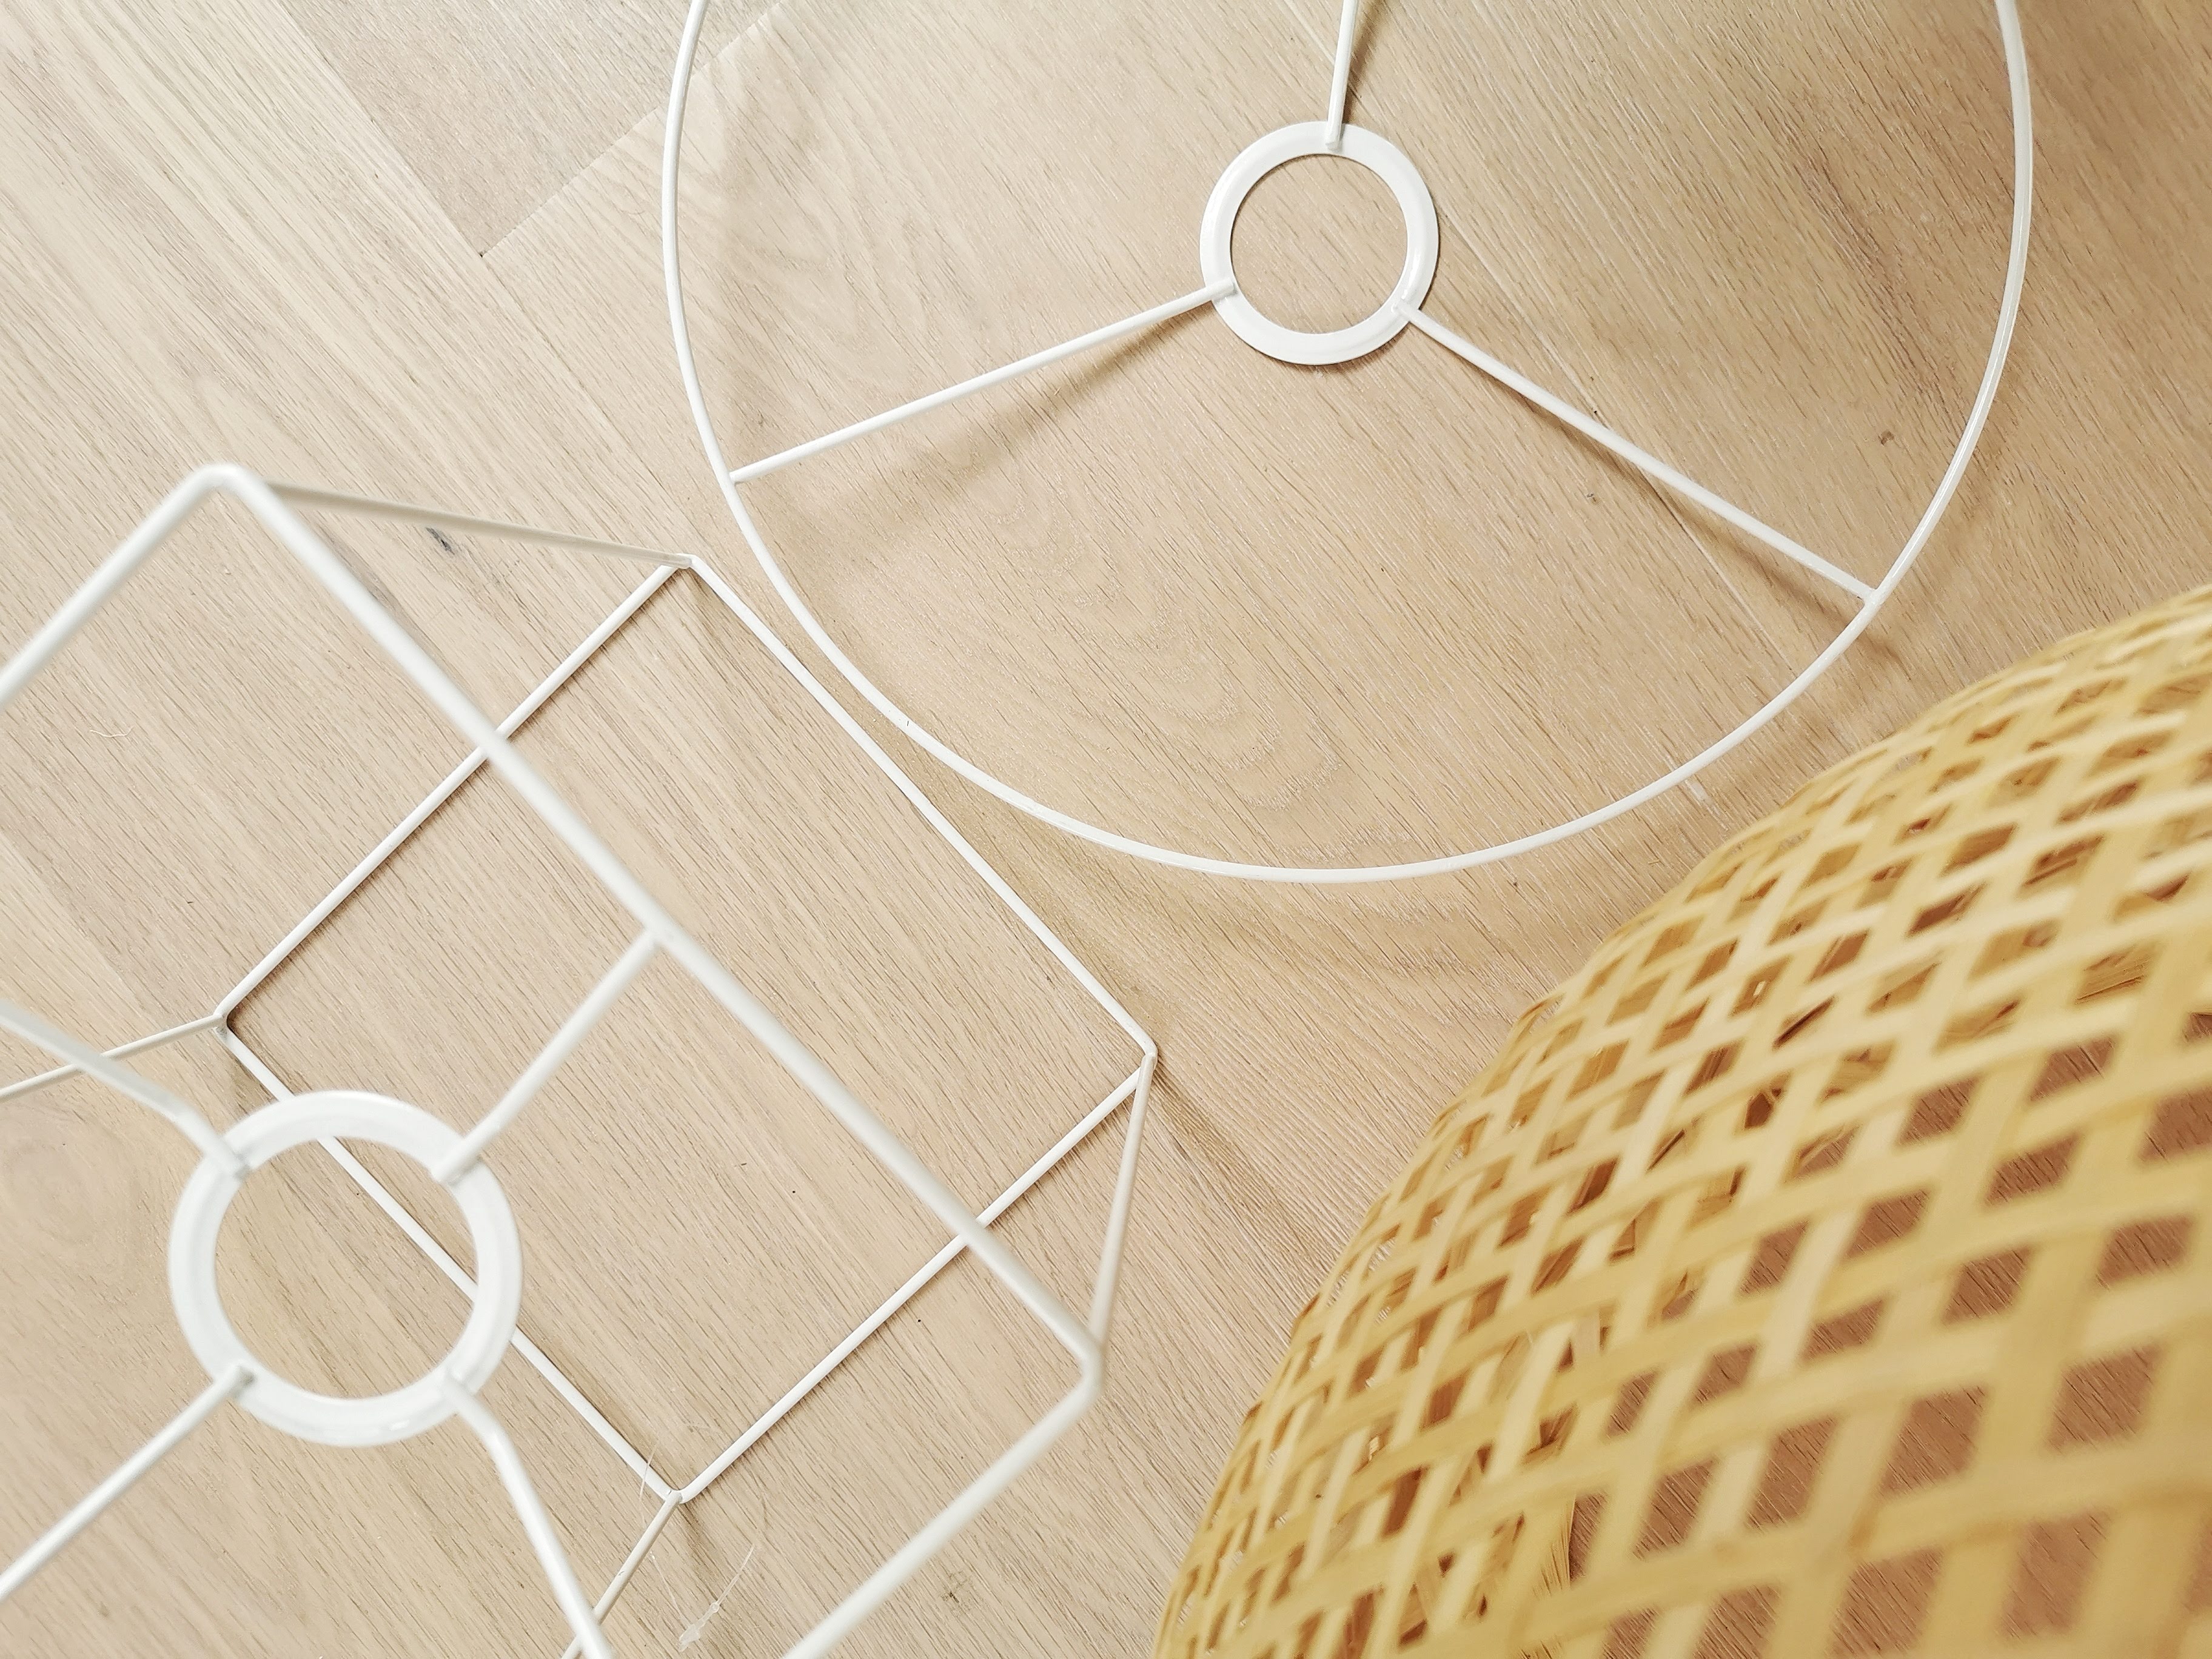 DIY-Bodenlampe aus einem Bast-, Bambus- oder Rattan-Lampenschirm weihnachtlich bestickt | mammilade.com